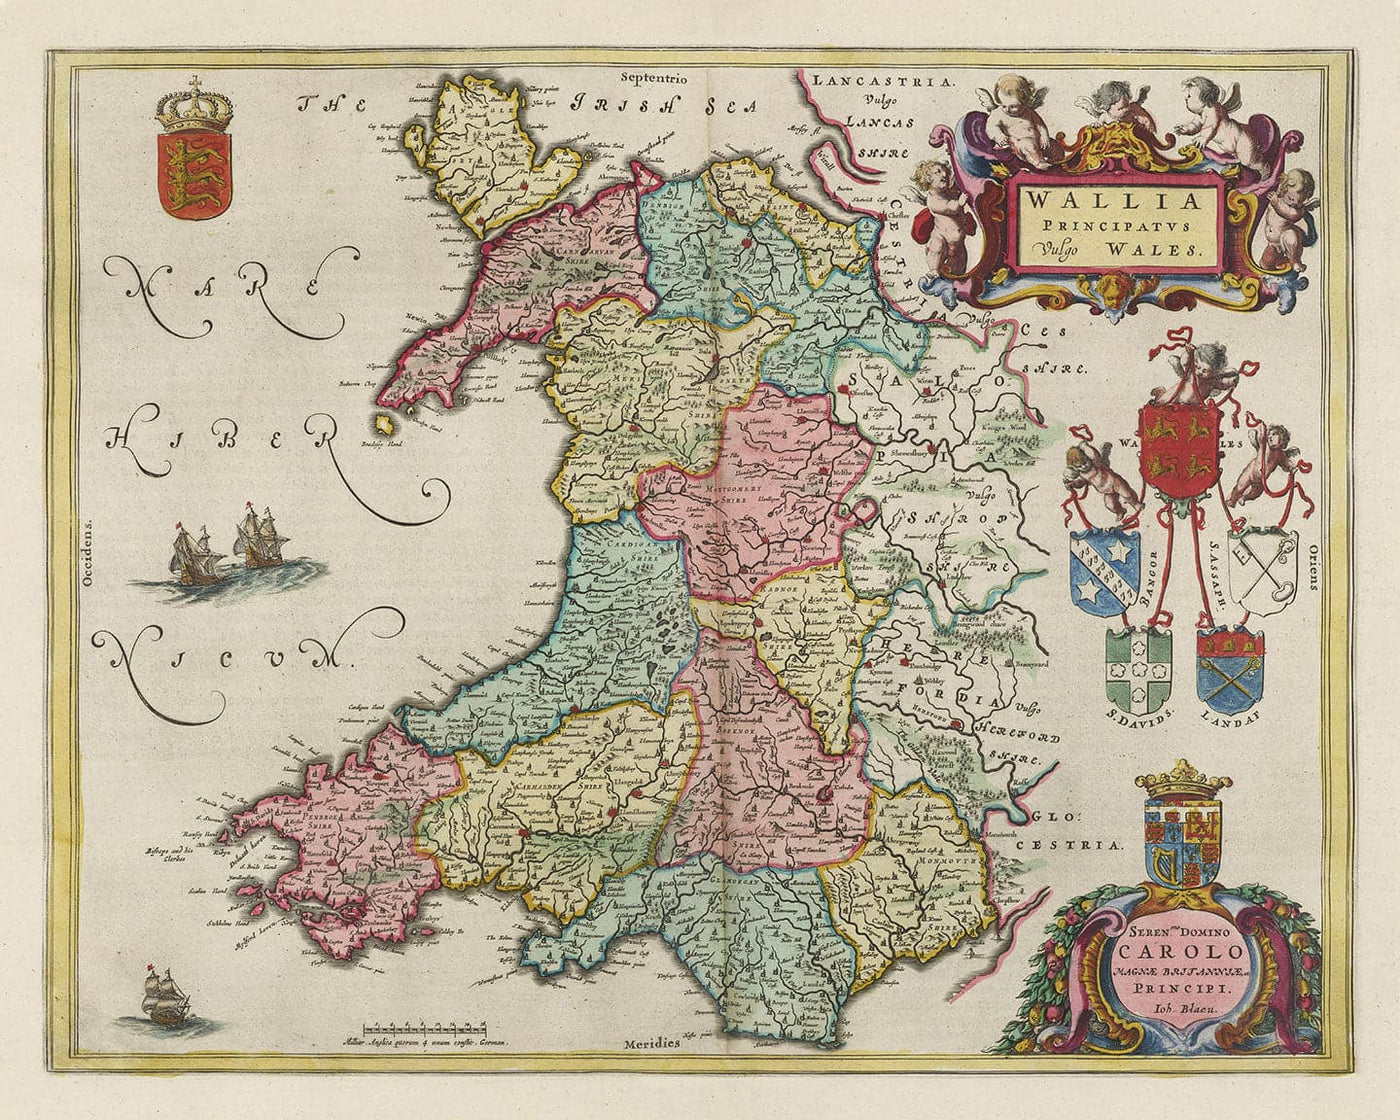 Seltene alte Karte von Wales von Jean Blaeu, 1645 - aus dem Theatrum Orbis Terrarum Sive Atlas Novus